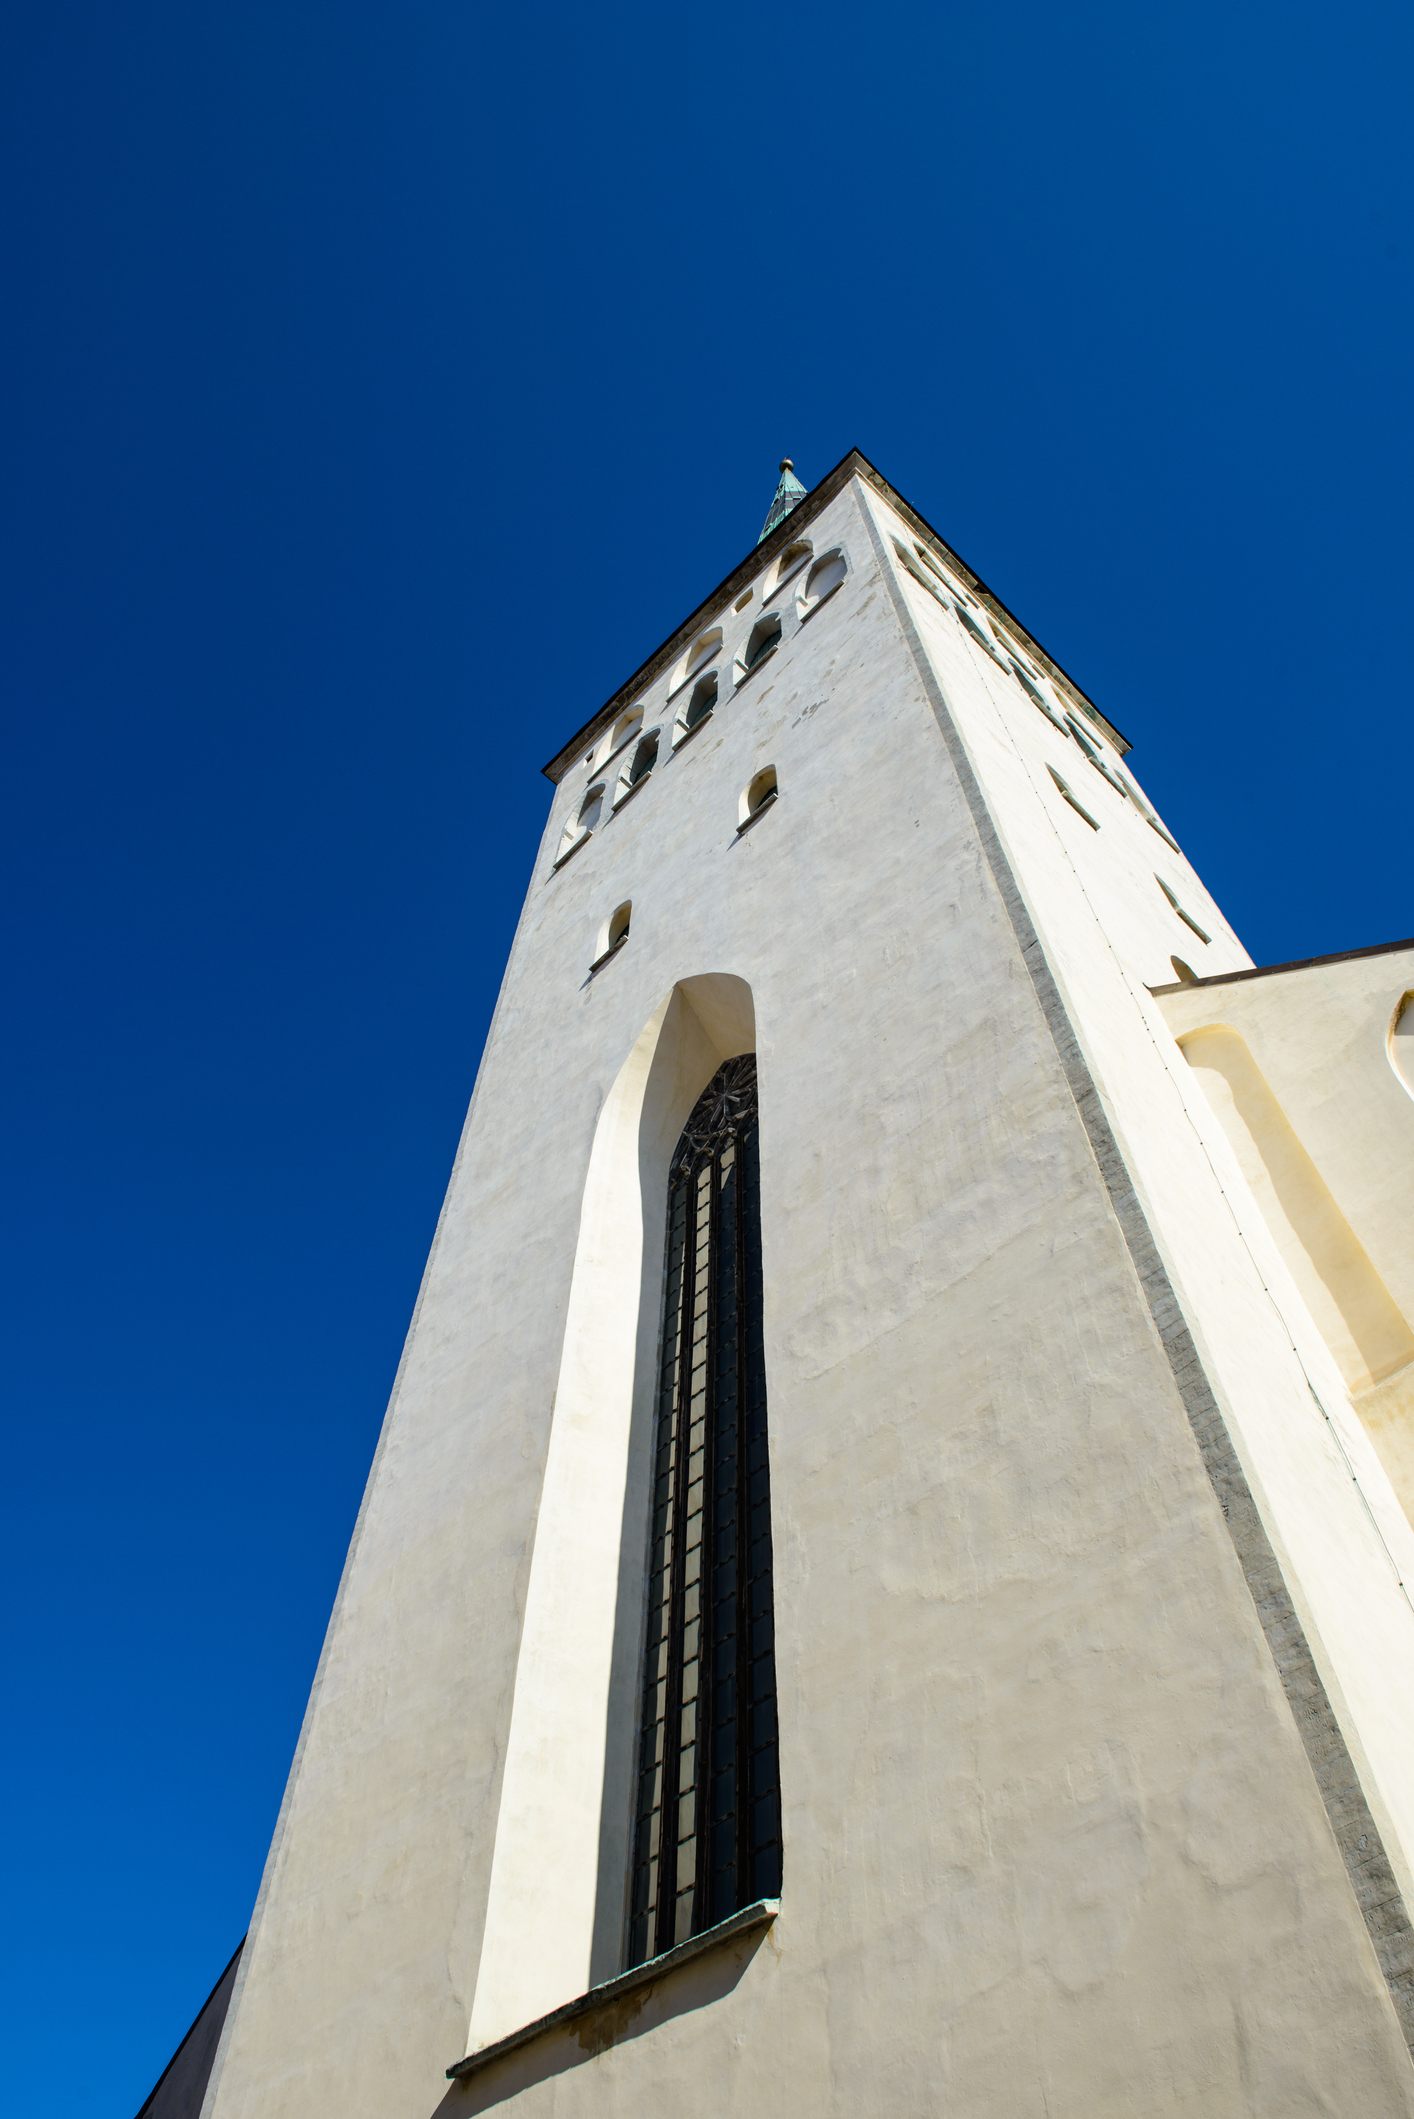 聖オラフ教会の塔の階段は258段